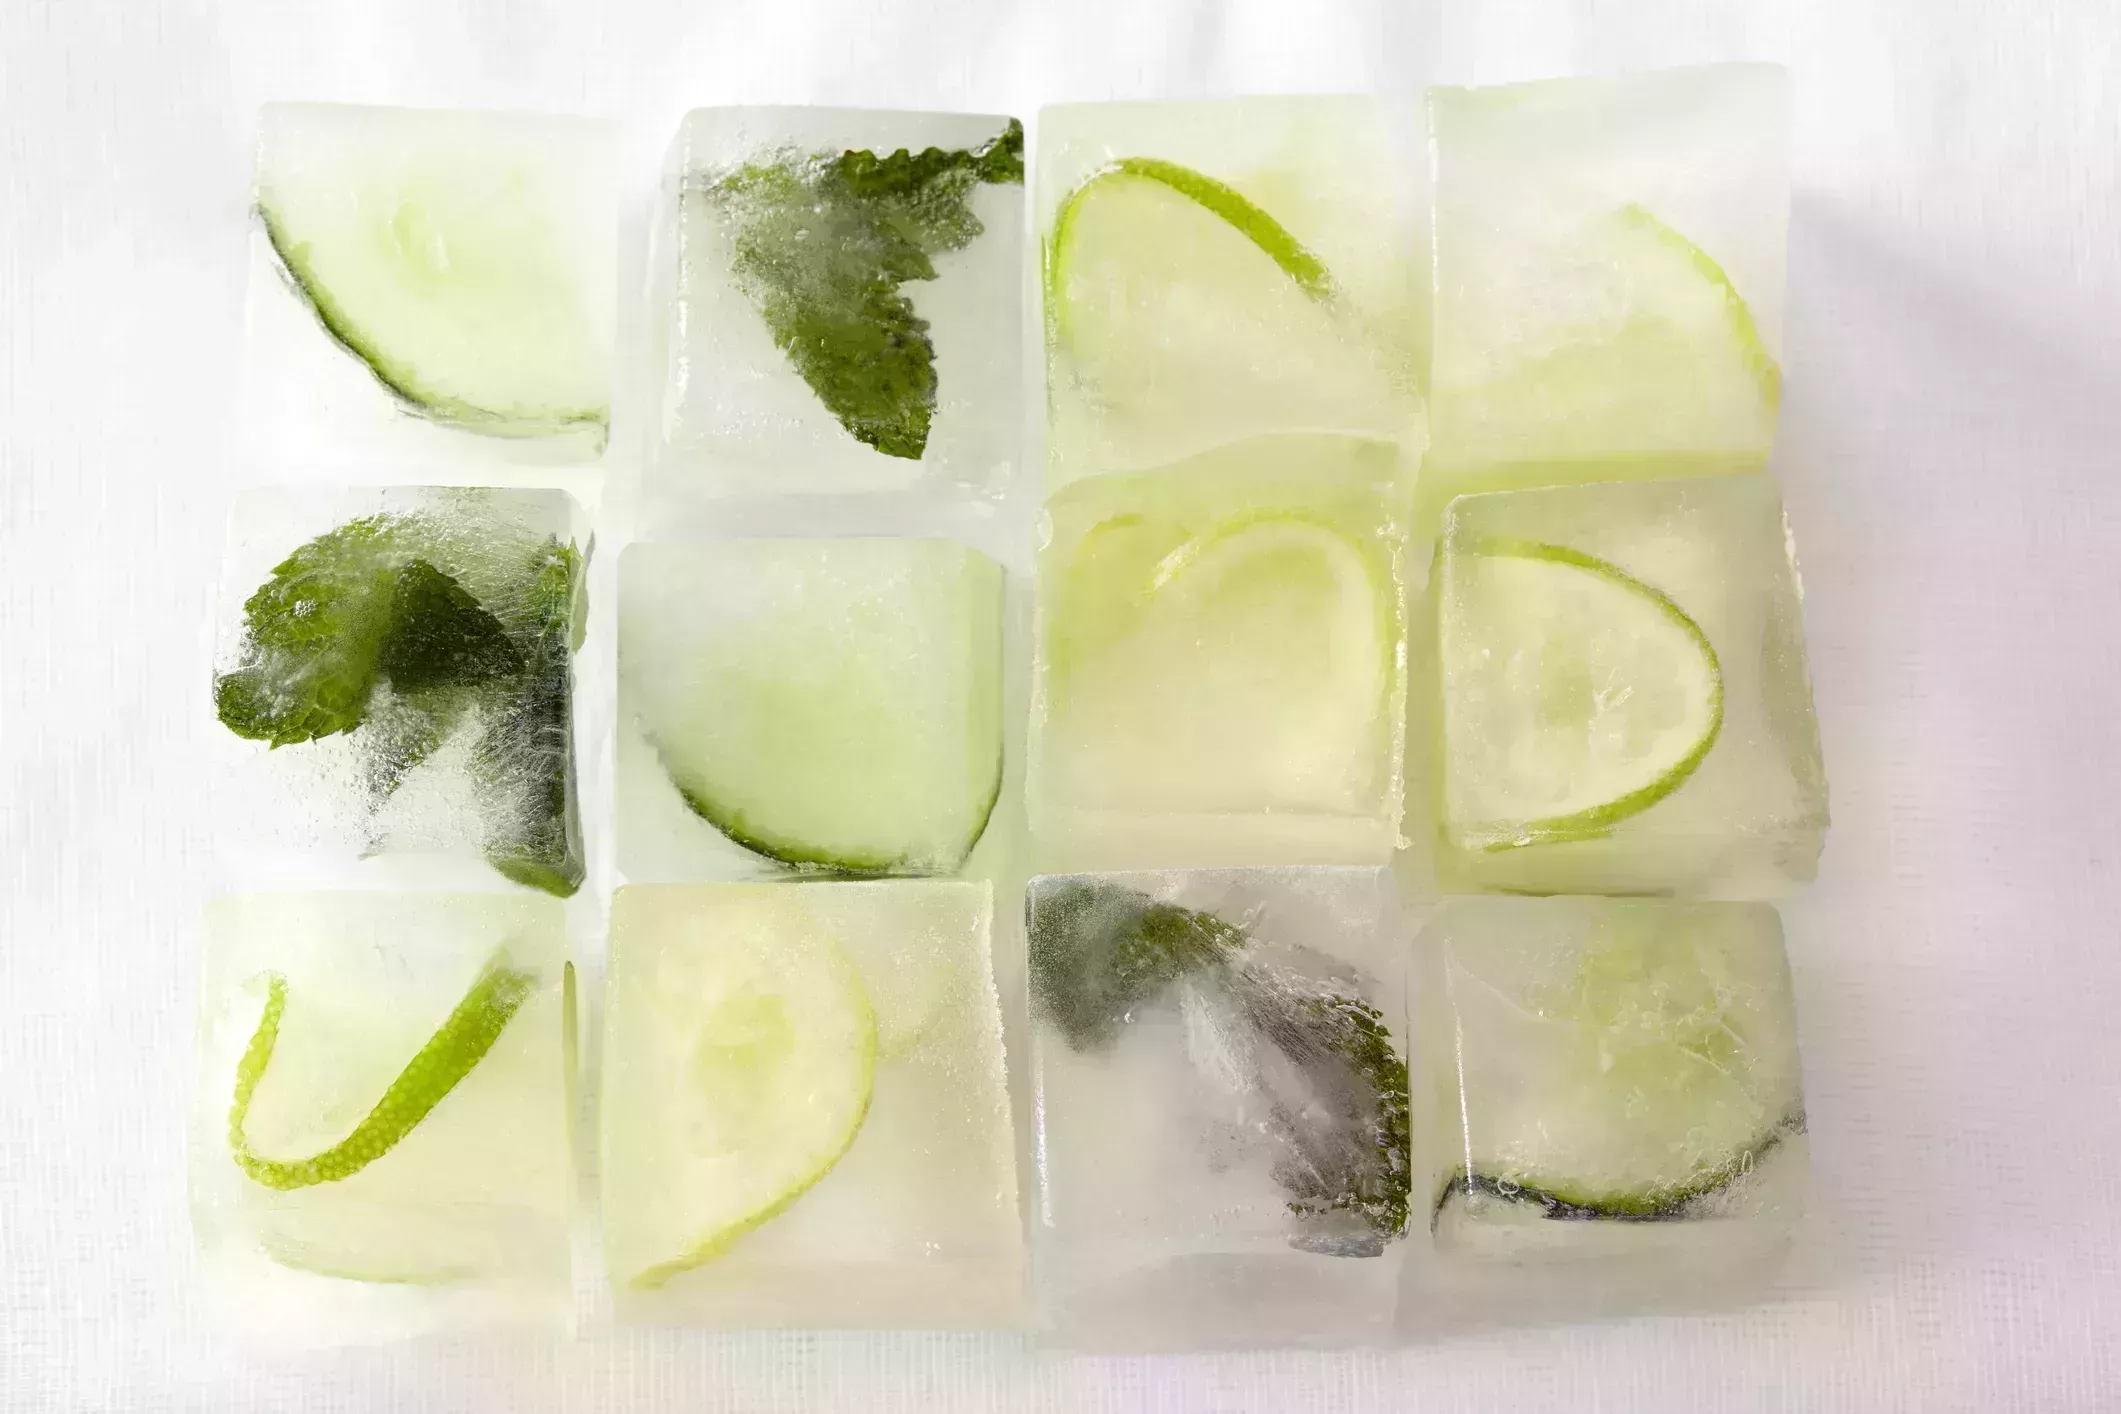 21 alimentos que no sabías que podías congelar: Aguacate, queso y más